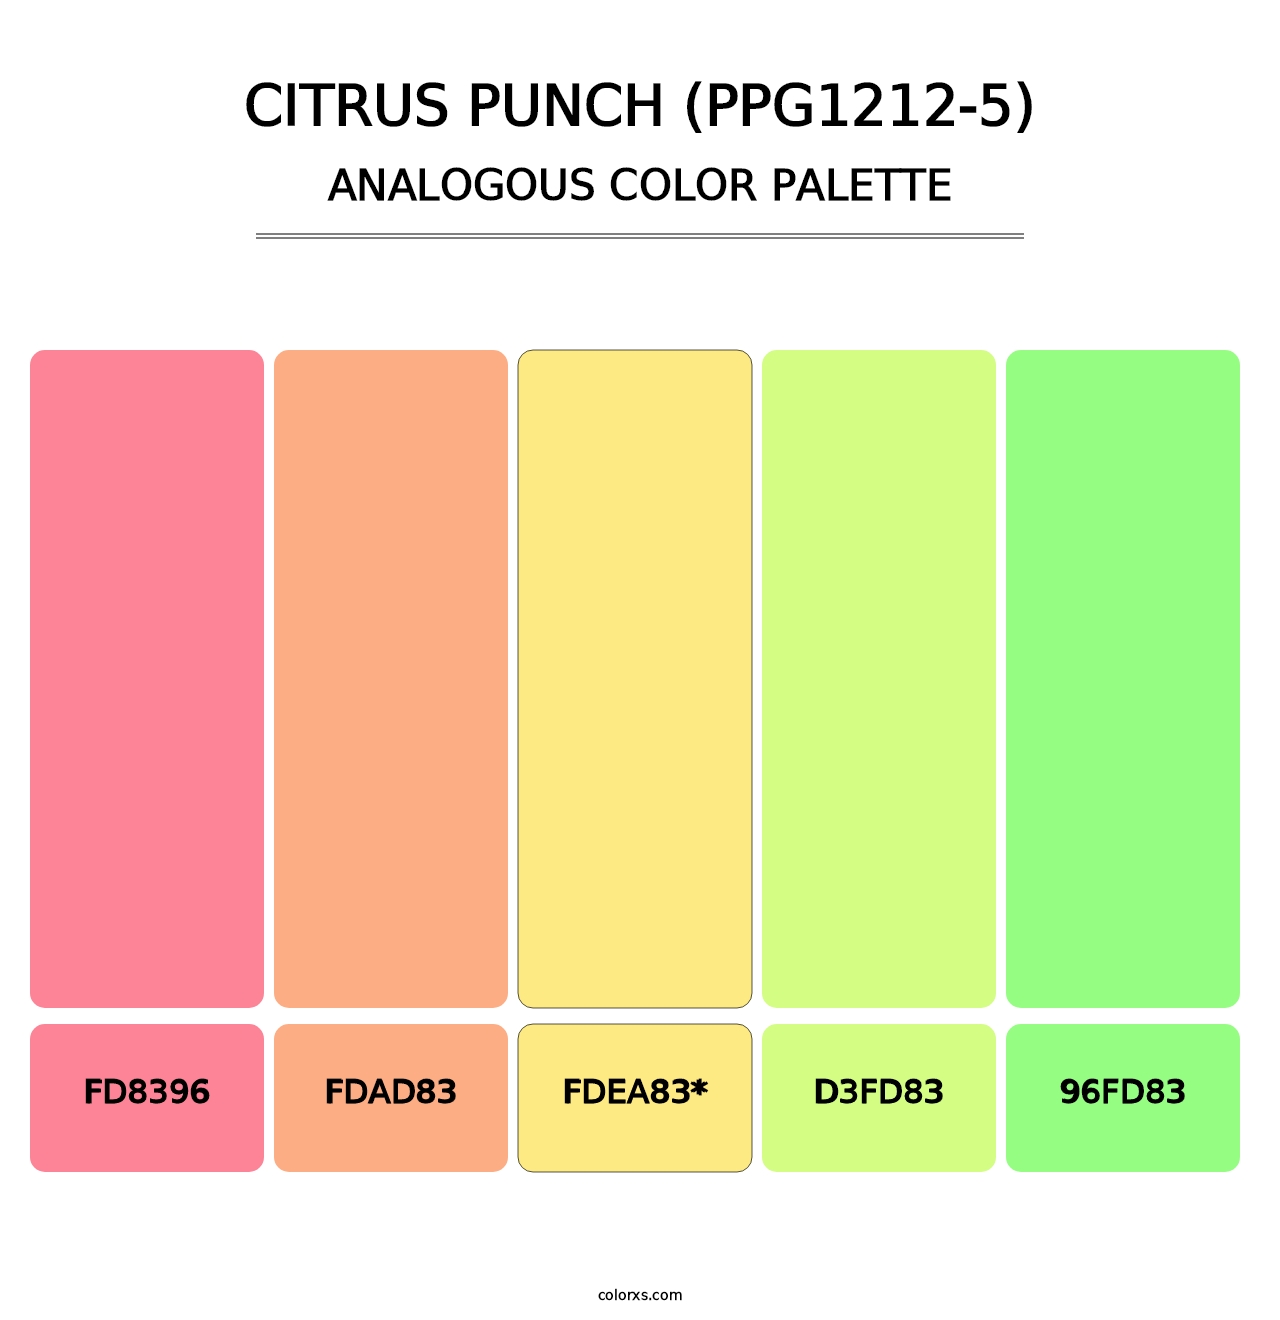 Citrus Punch (PPG1212-5) - Analogous Color Palette